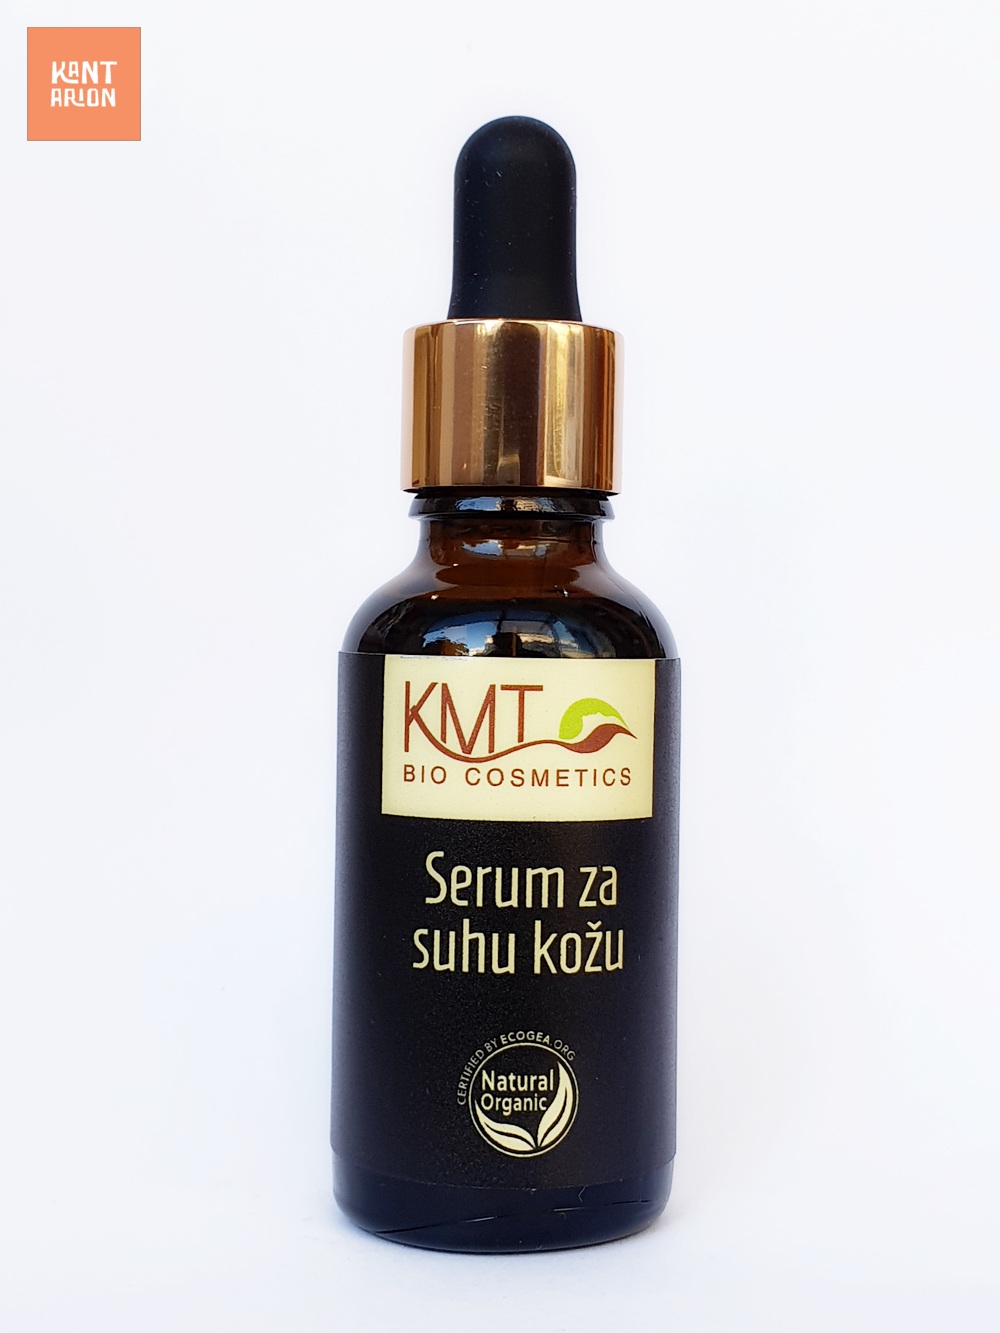 KMT BIOCOSMETICS – Serum za suhu kožu